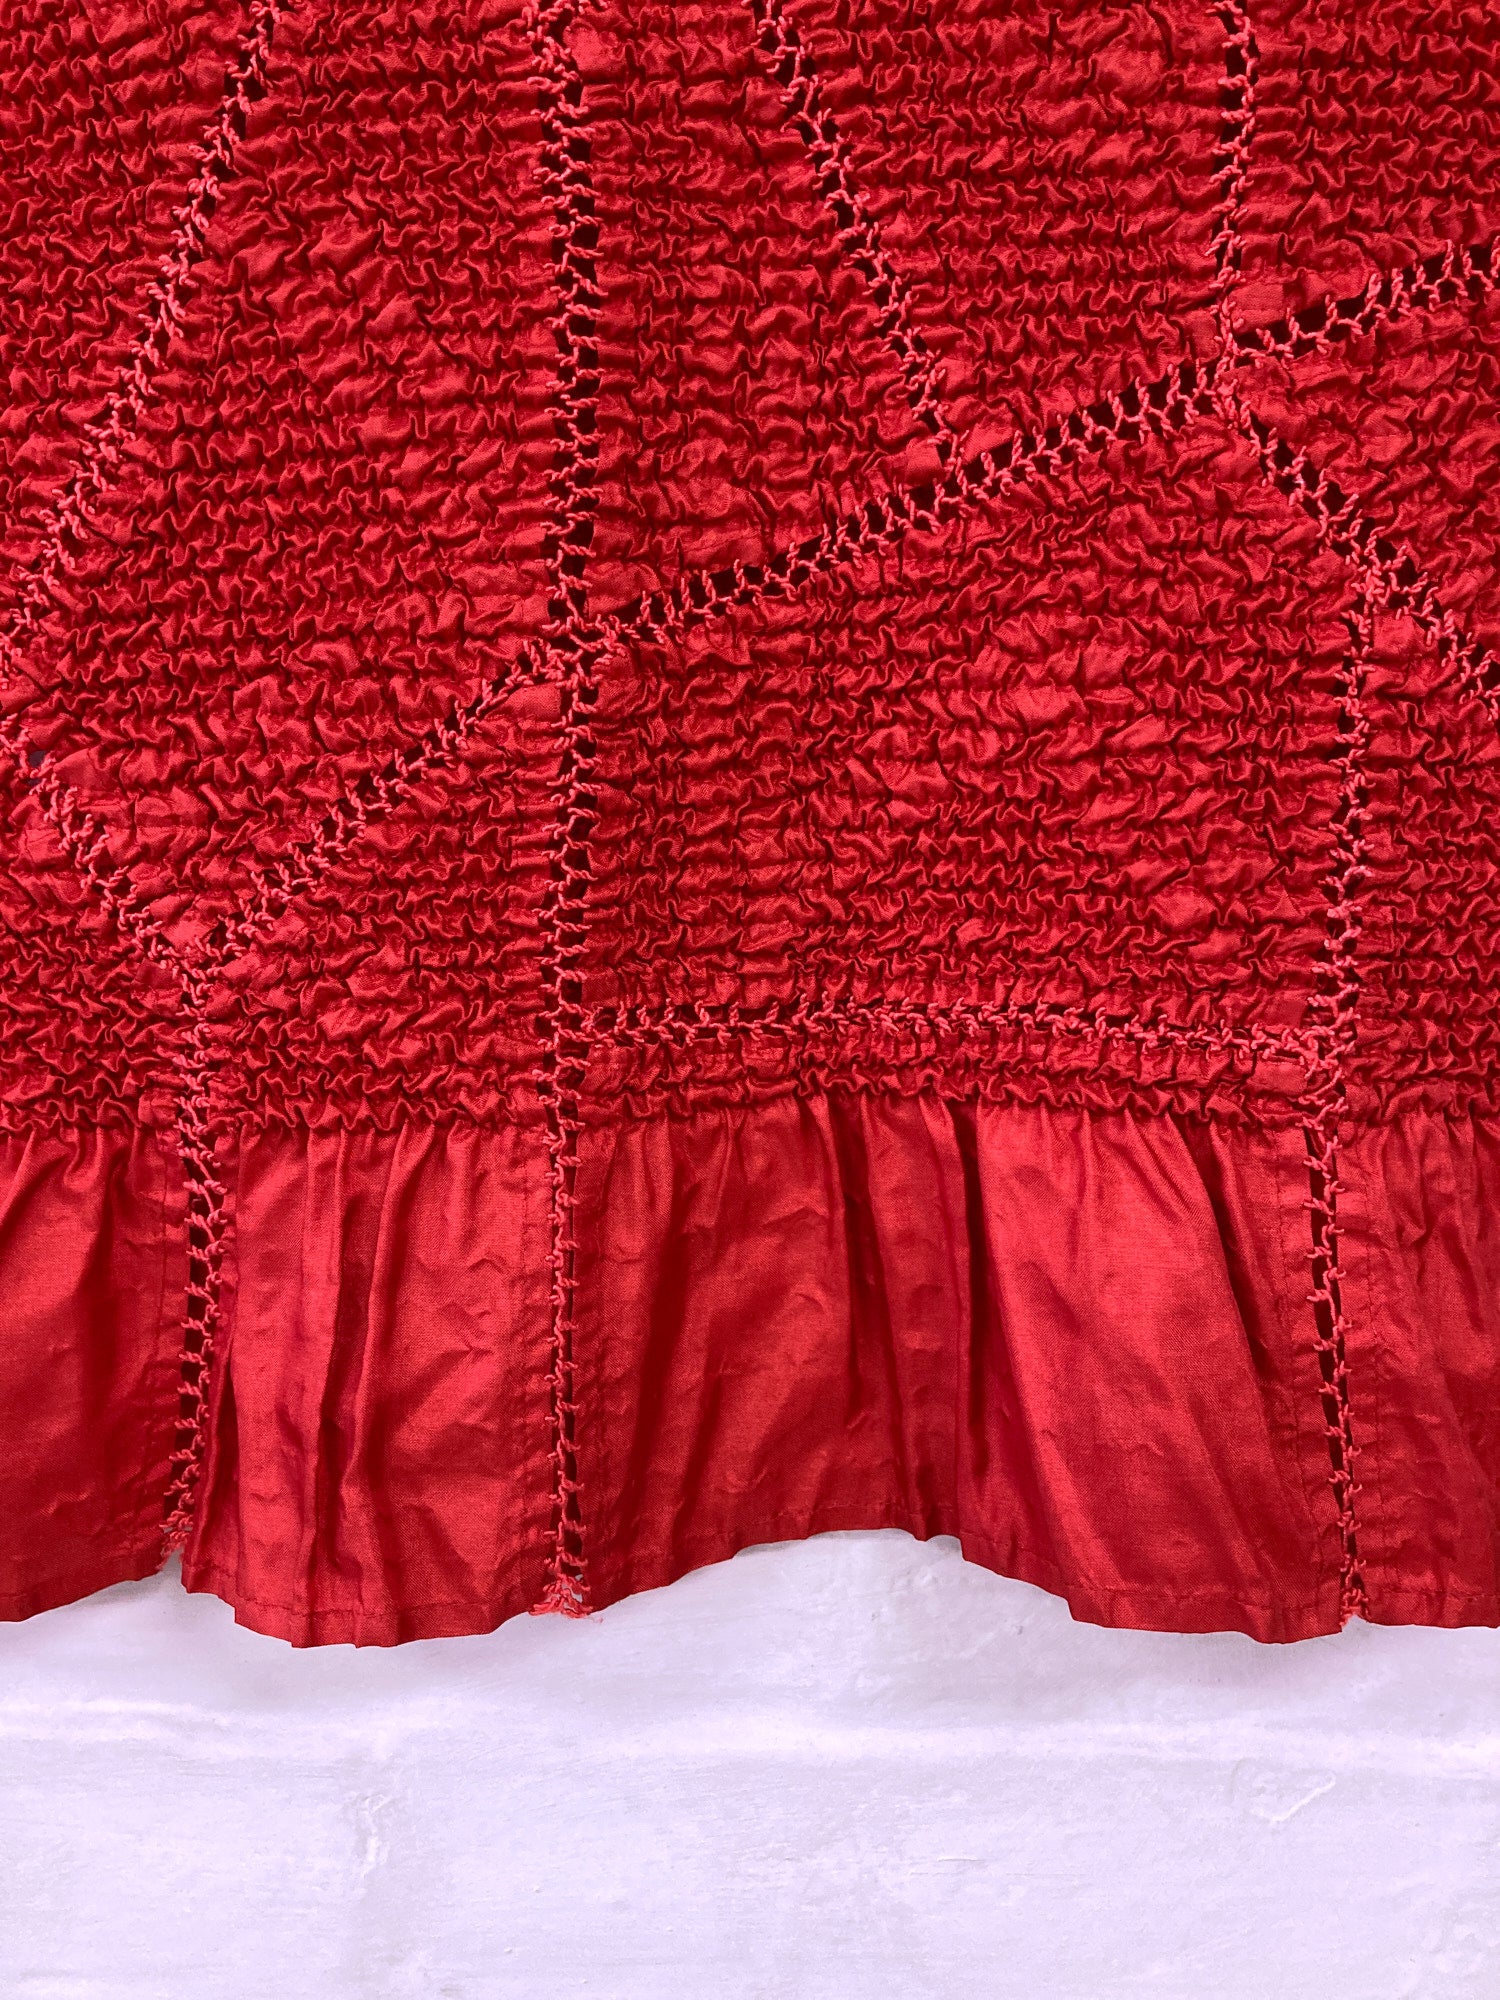 Yoshiki Hishinuma wrinkled red poly sleeveless top with lacework and hem ruffle